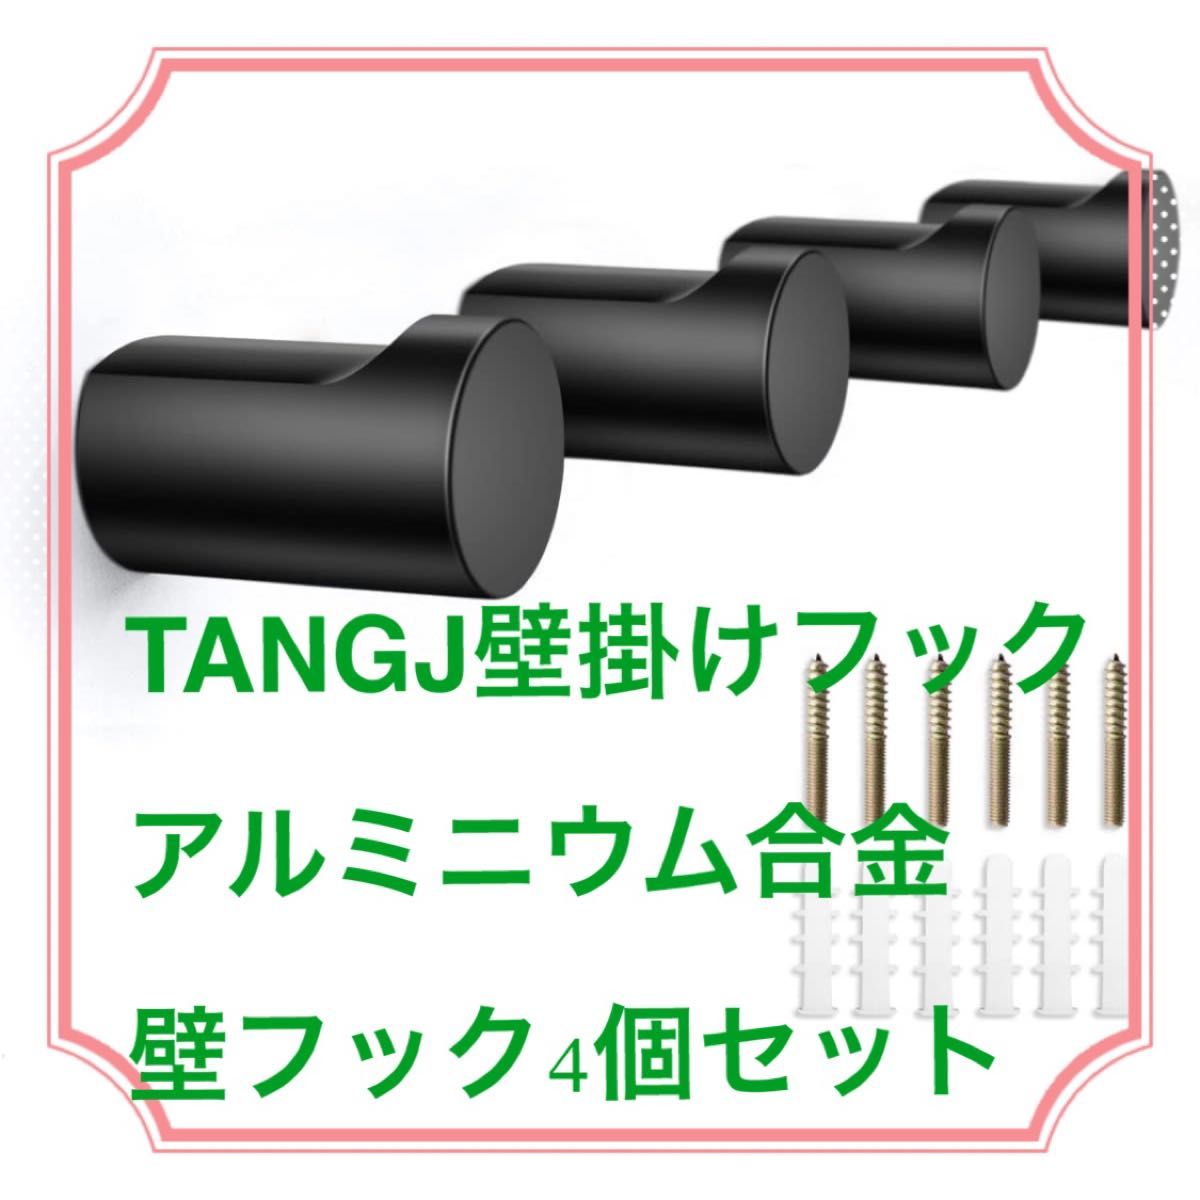 【スタイリッシュ】TANGJ壁掛けフック アルミニウム合金ブラック4個セット